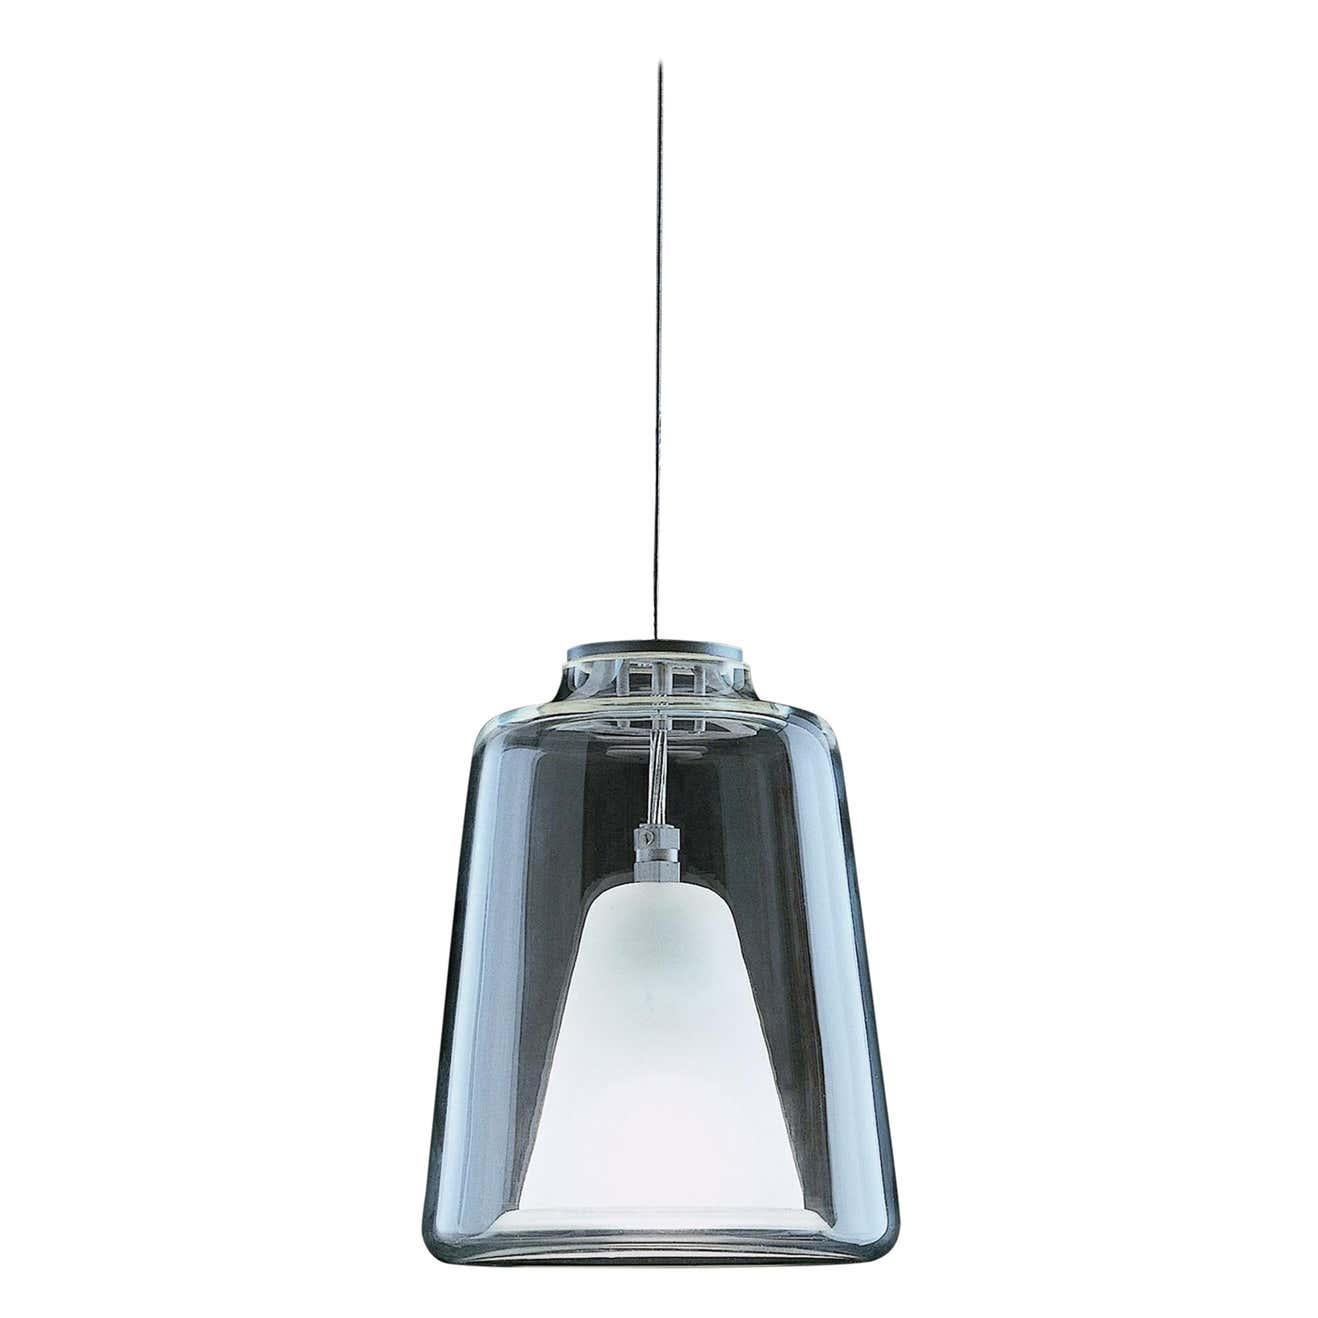 Contemporary Marta Laudani & Marco Romanelli Suspension Lamp 'Lanterna' by Oluce For Sale